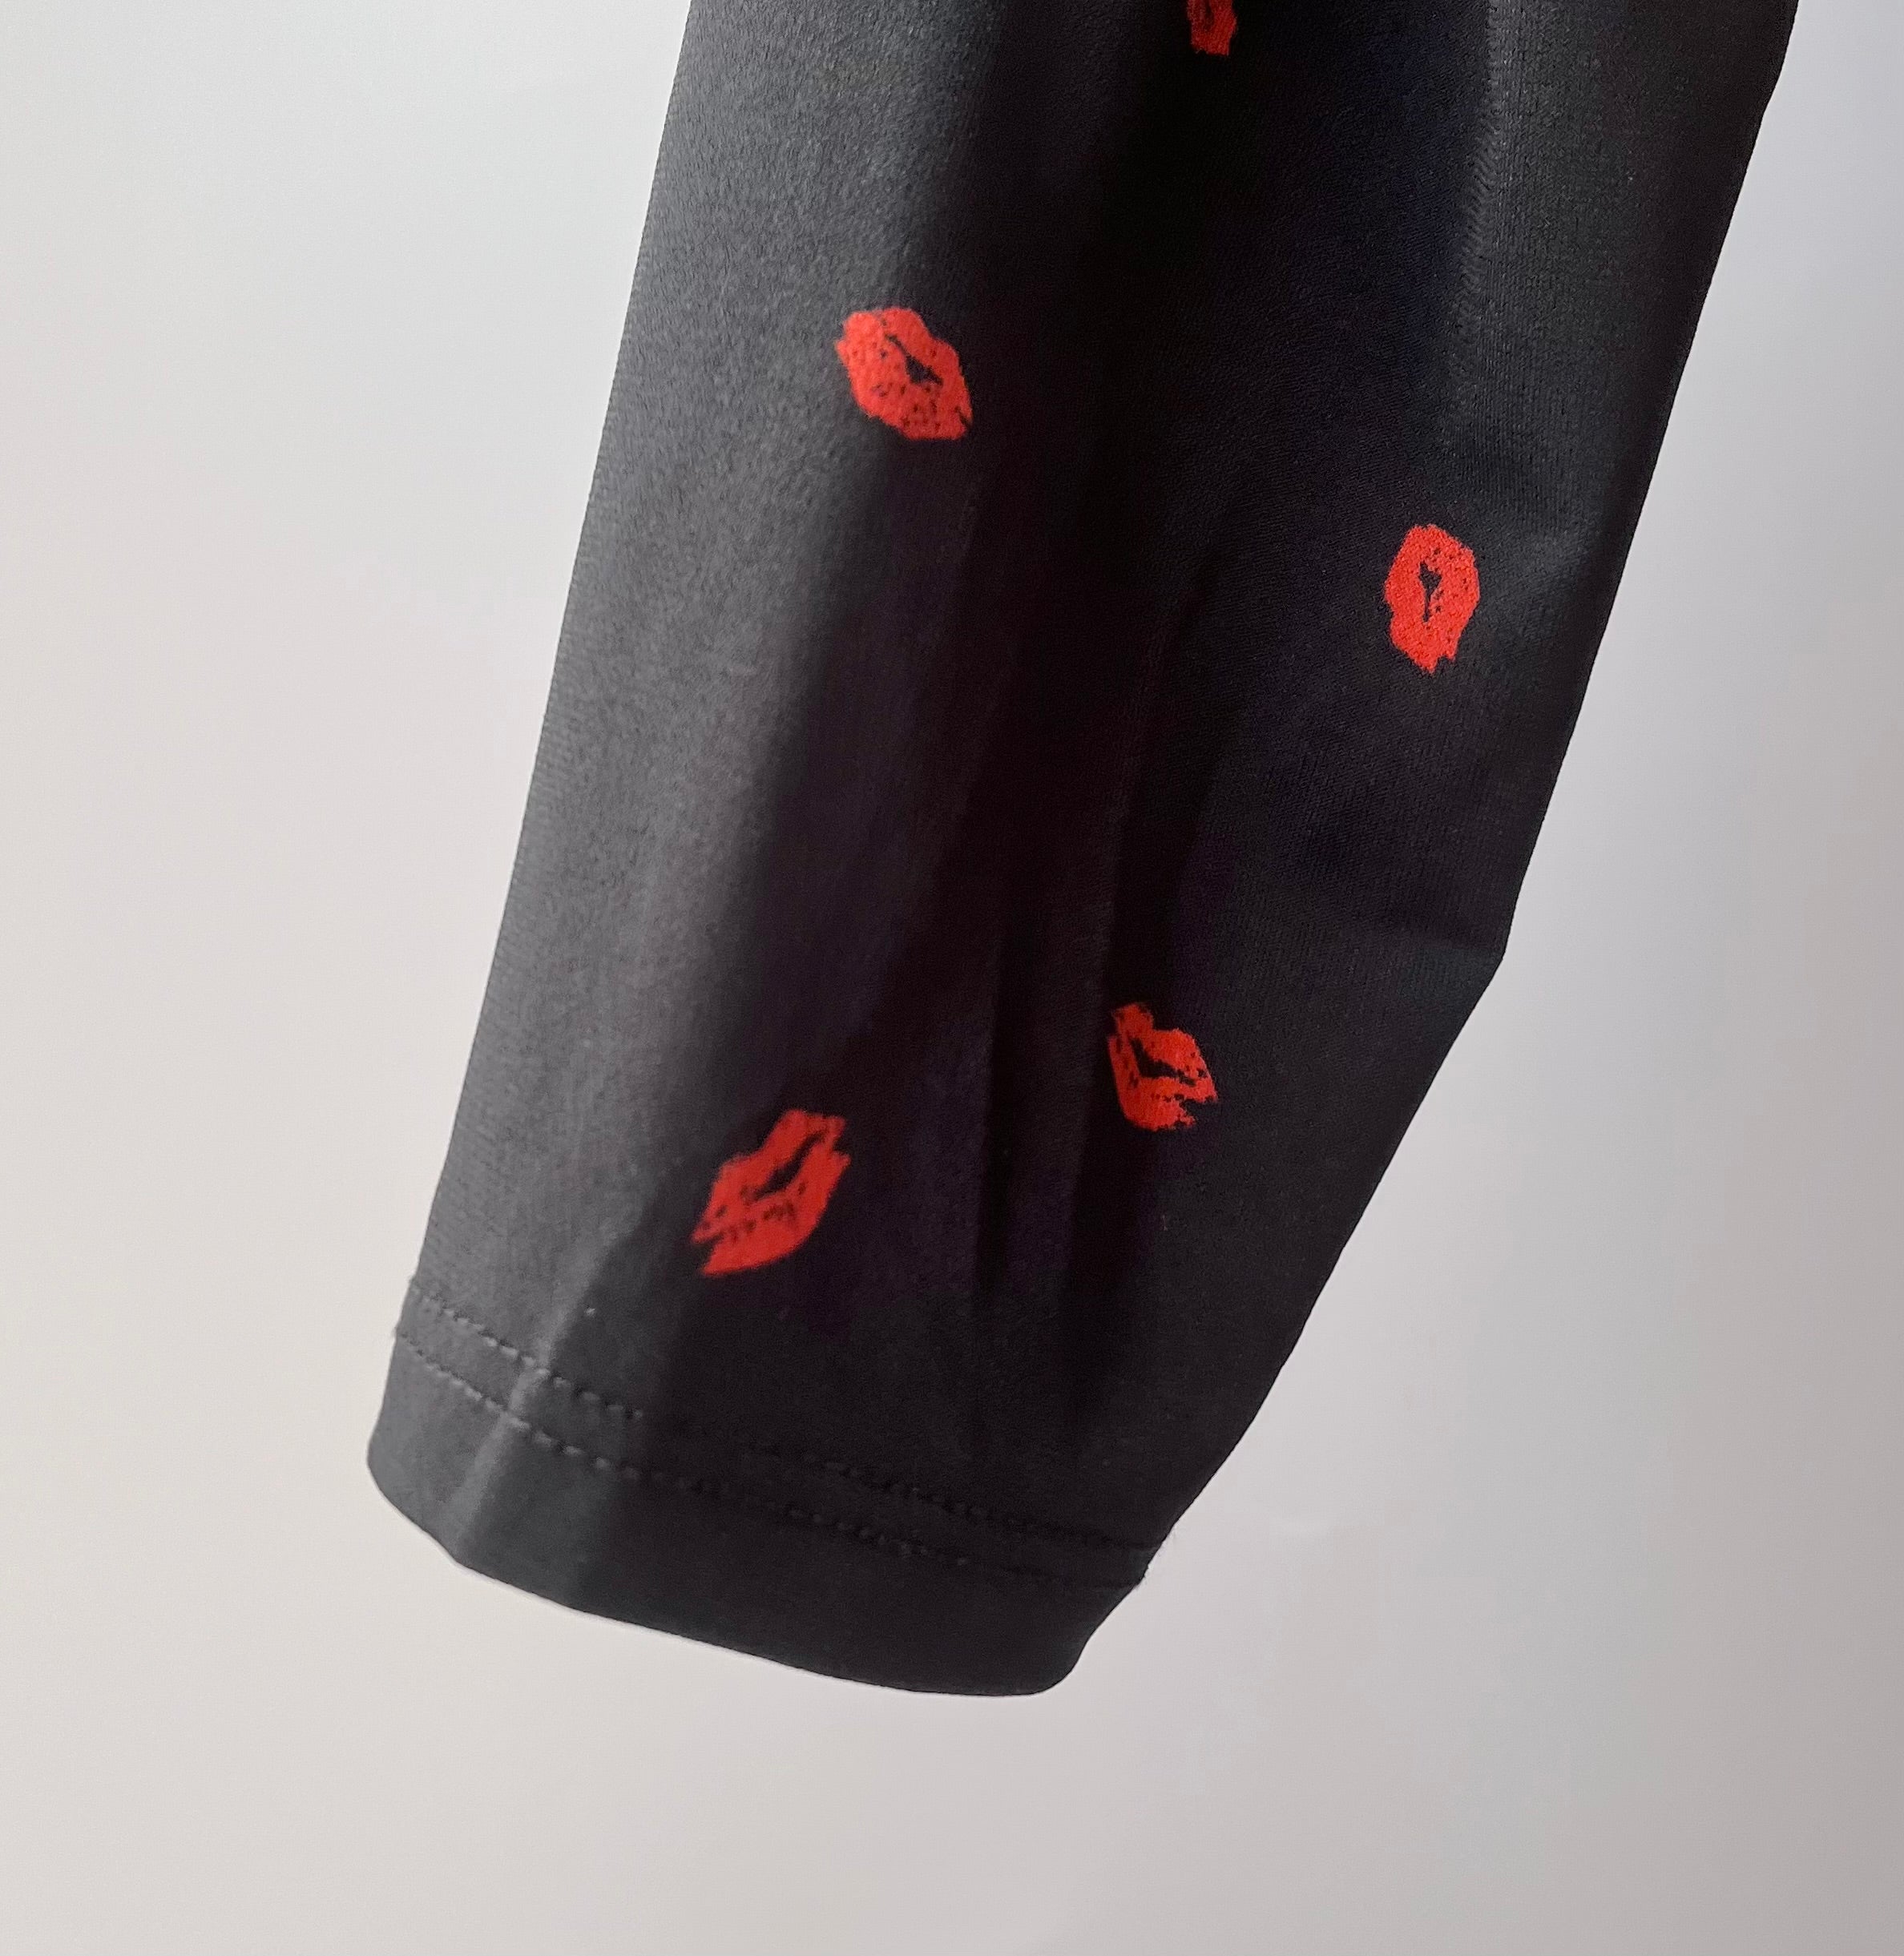 NWT Torrid “Kiss” Flared Black/Red Dress, Size: M/L